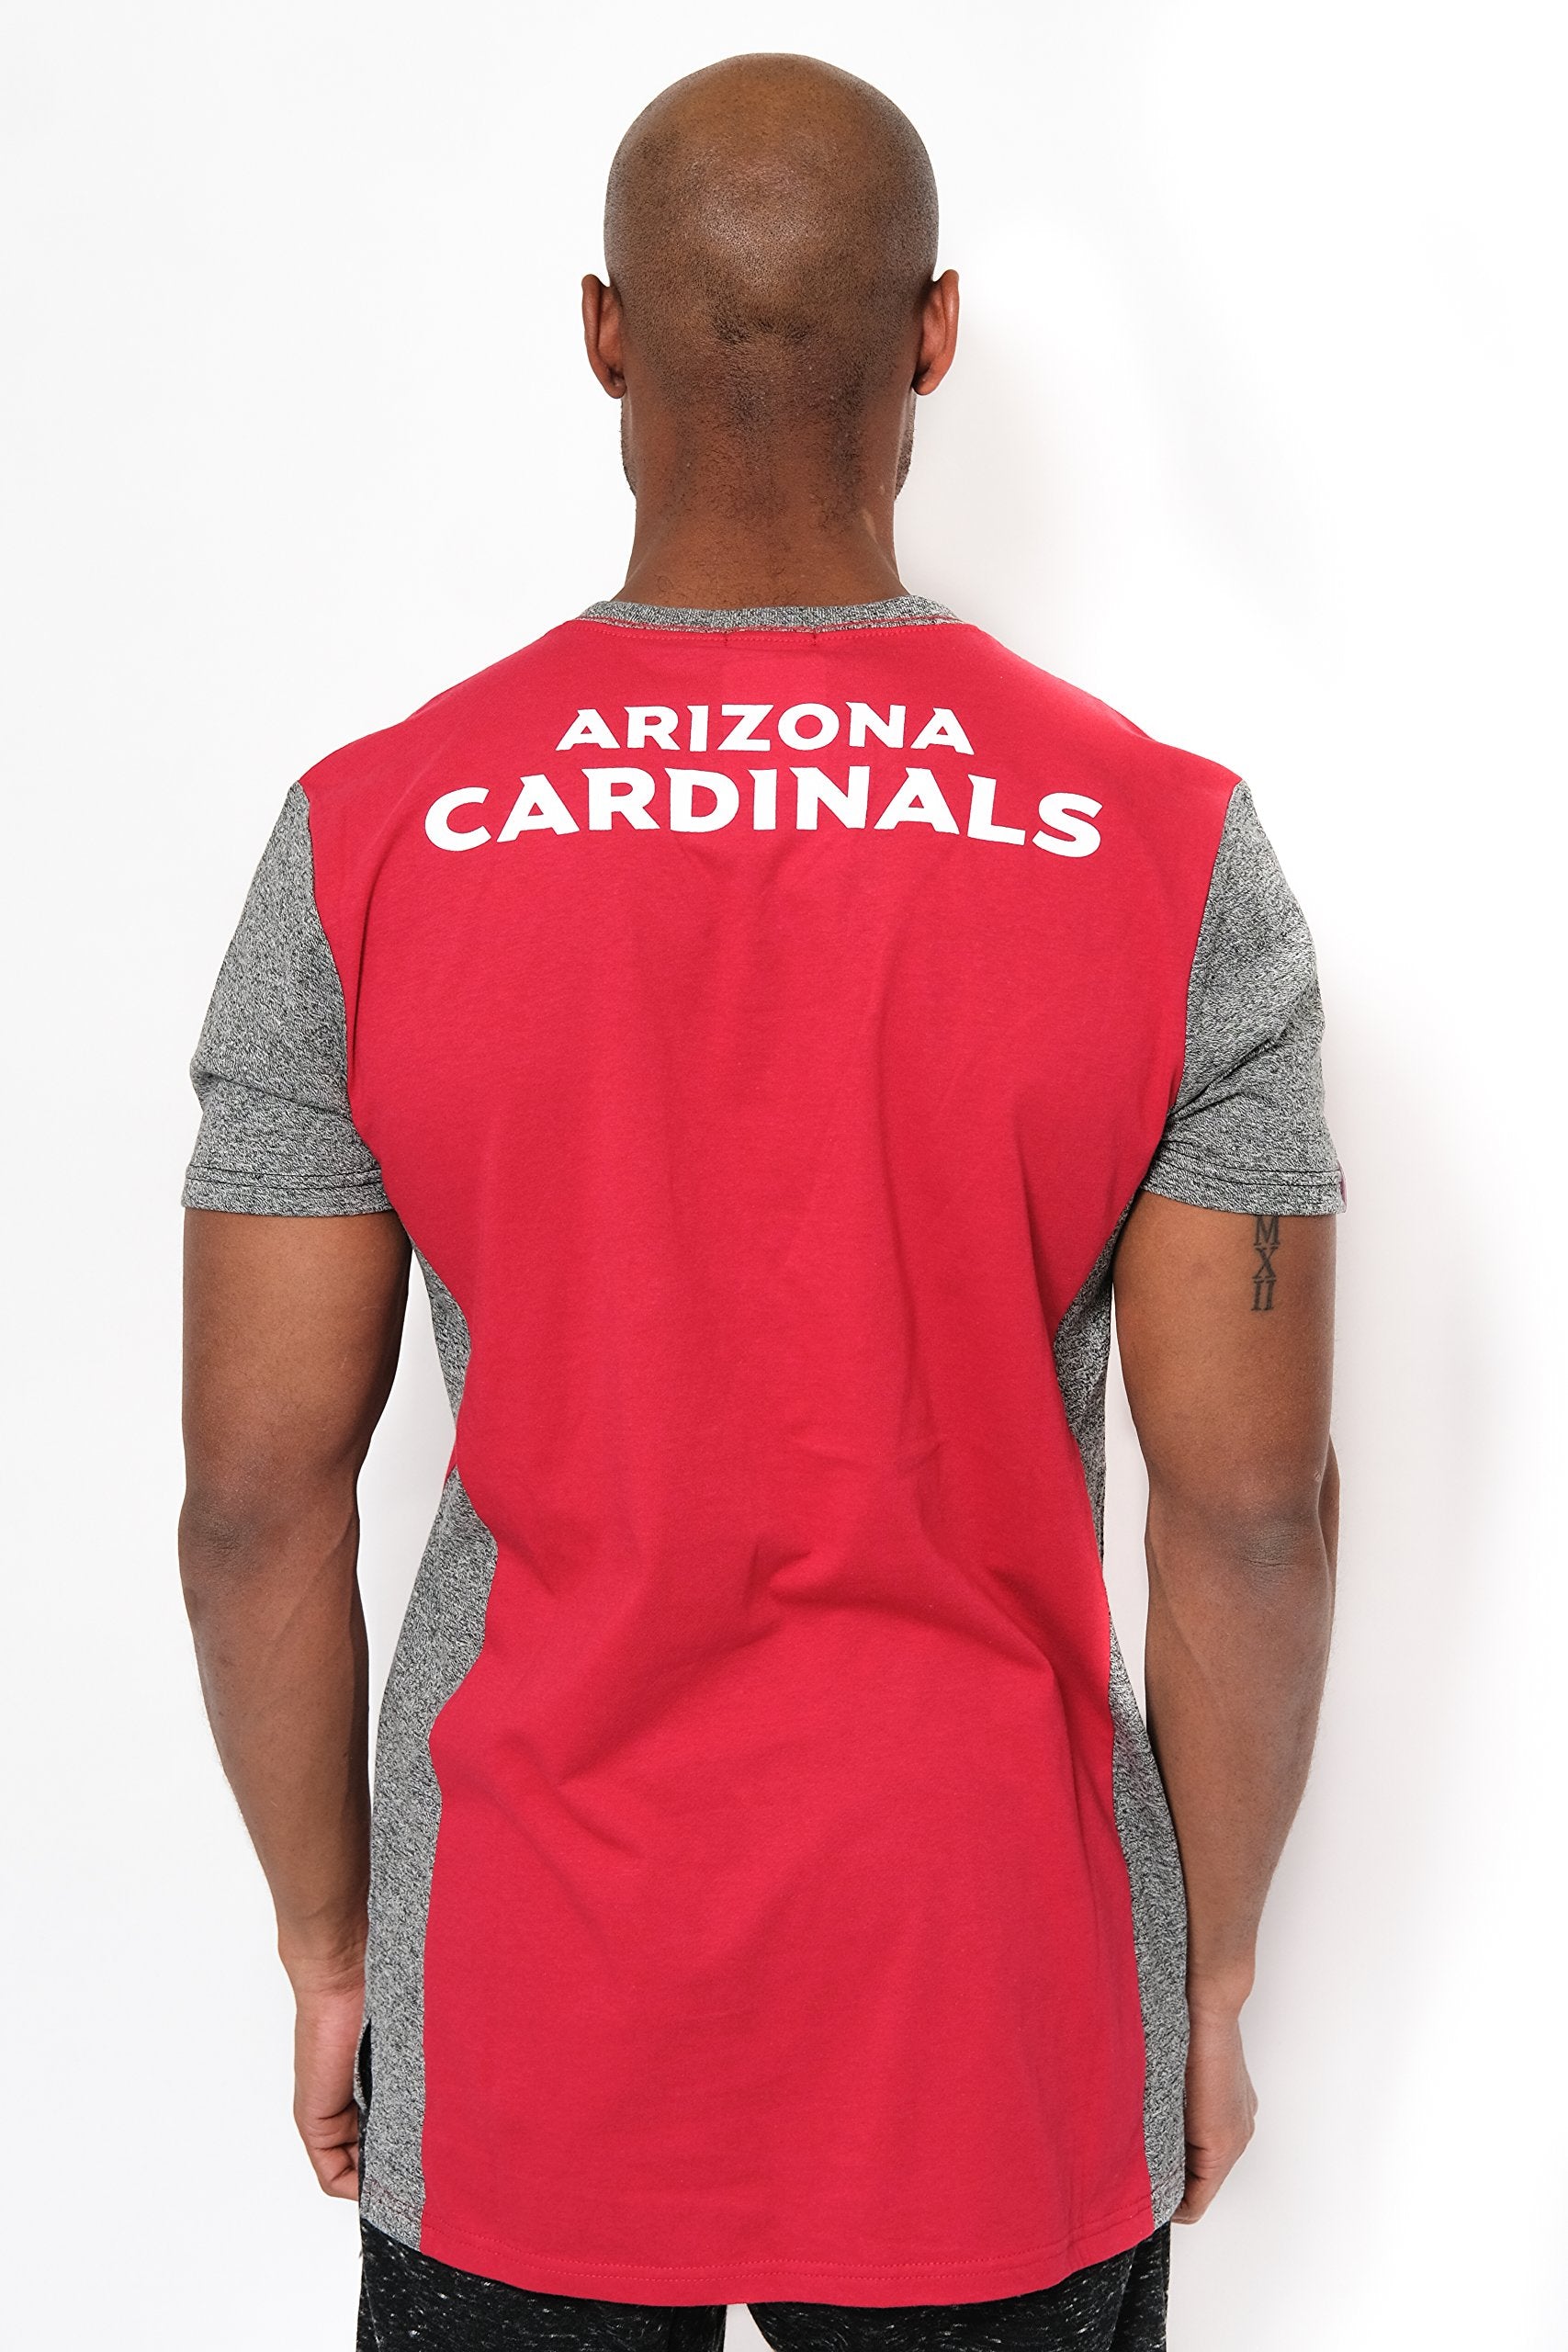 Ultra Game NFL Arizona Cardinals Mens T-Shirt Raglan Block Short Sleeve Tee Shirt|Arizona Cardinals